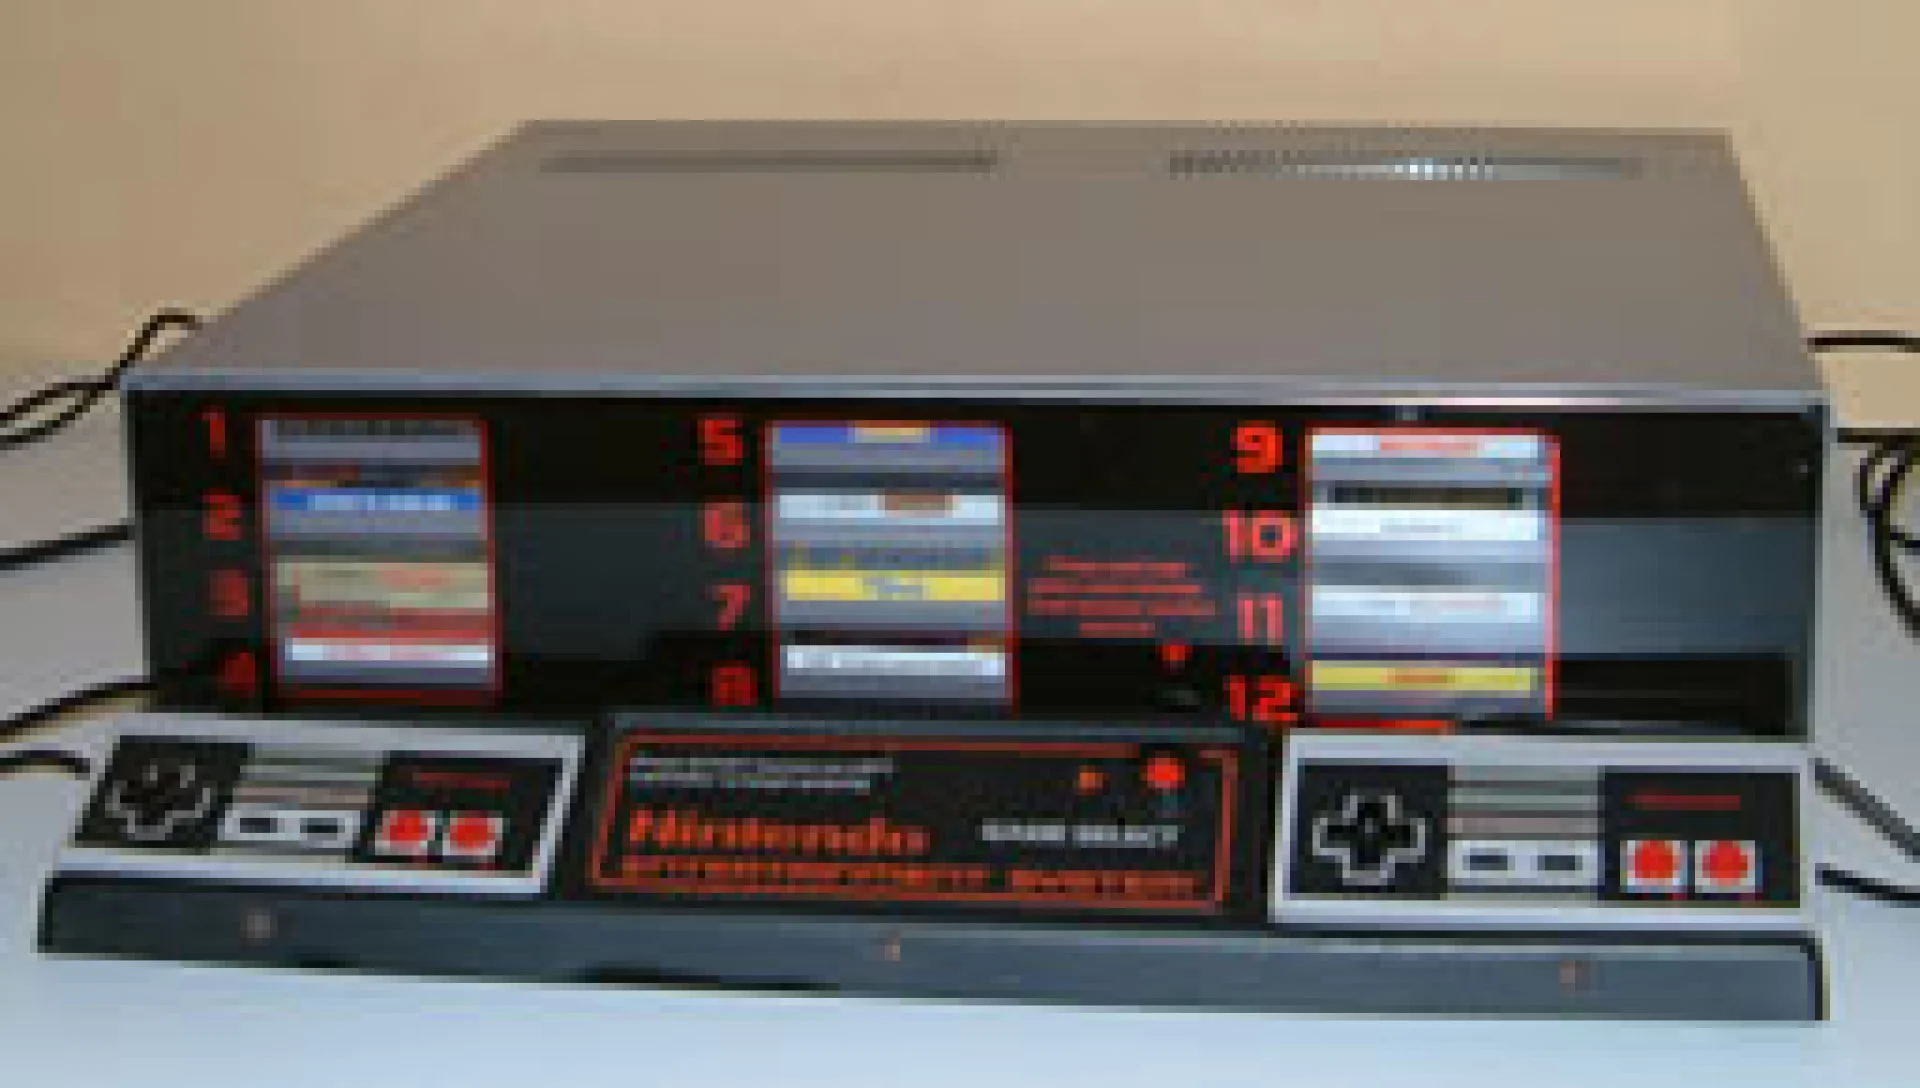  NES M82 Kiosk [EU]